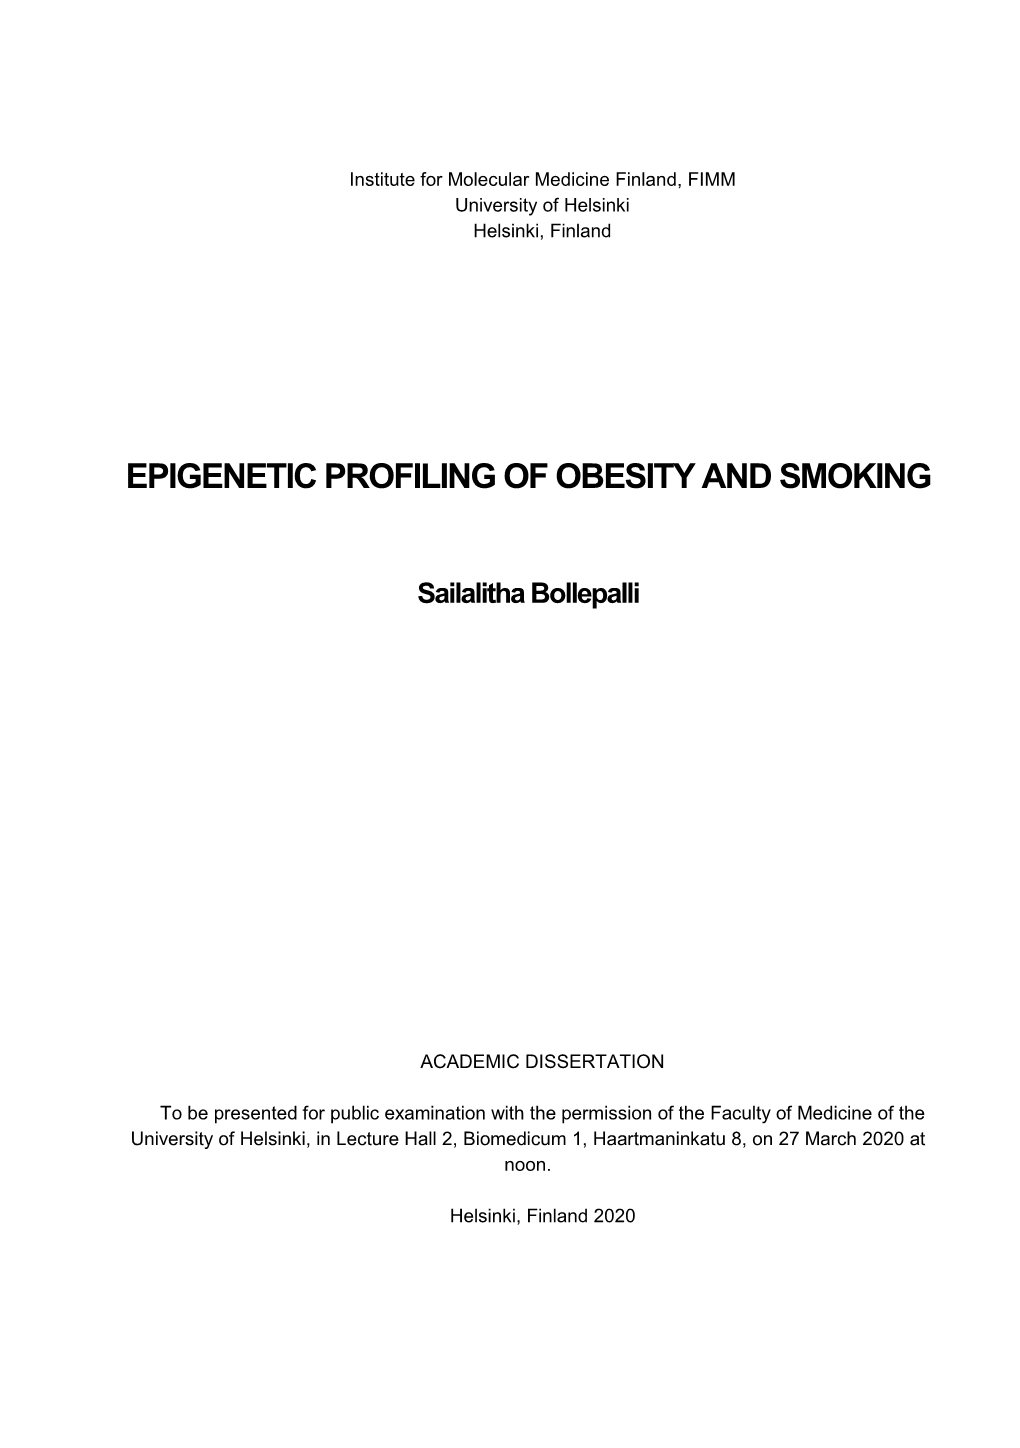 Epigenetic Profilingof Obesity and Smoking